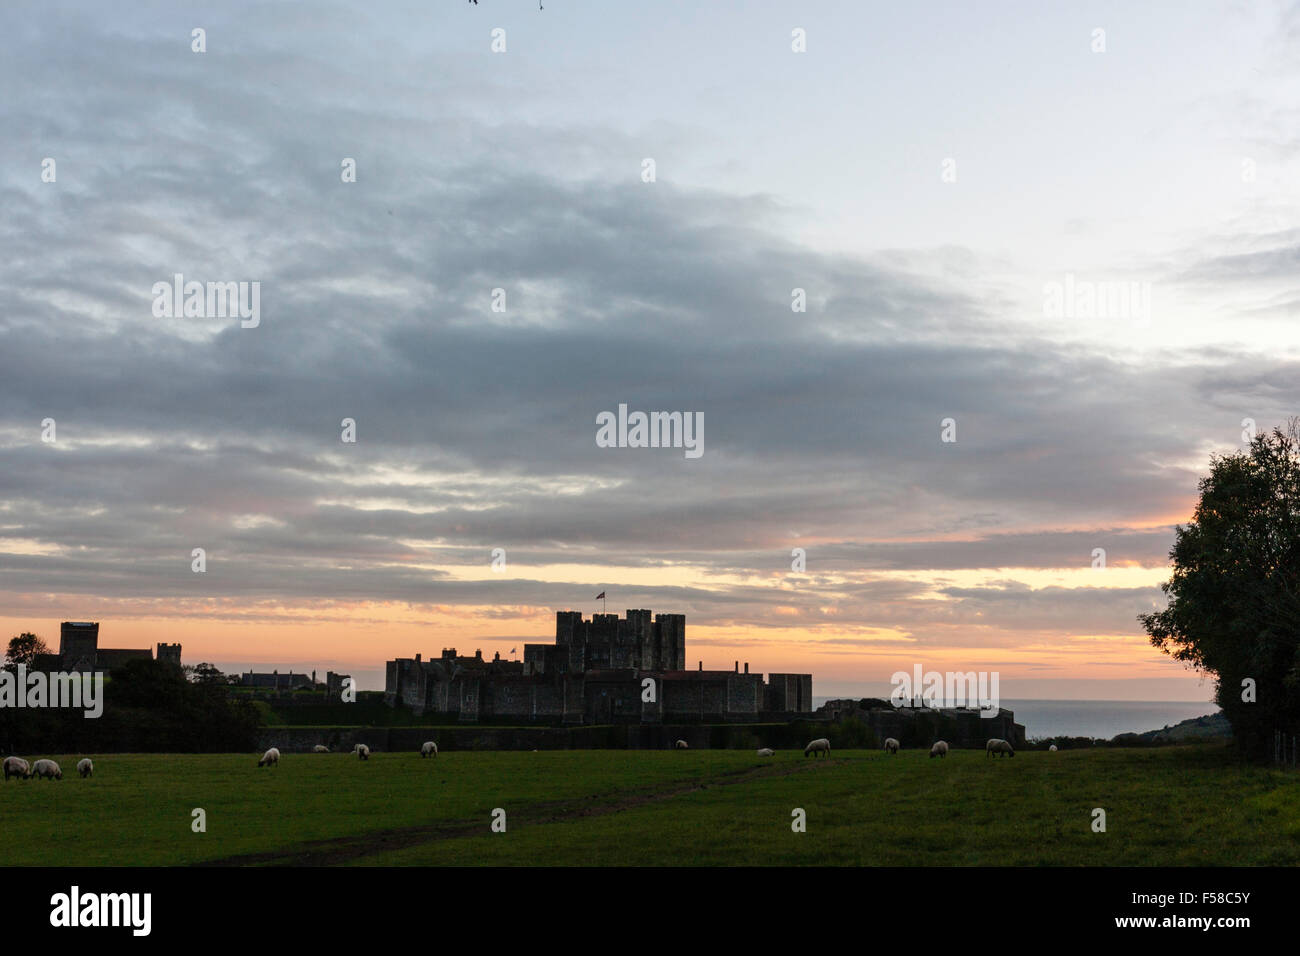 Inghilterra, il castello di Dover. Mantenere e pareti esterne profilarsi all'orizzonte con nuvoloso sera cielo arancione e il Canale della Manica in background. Foto Stock